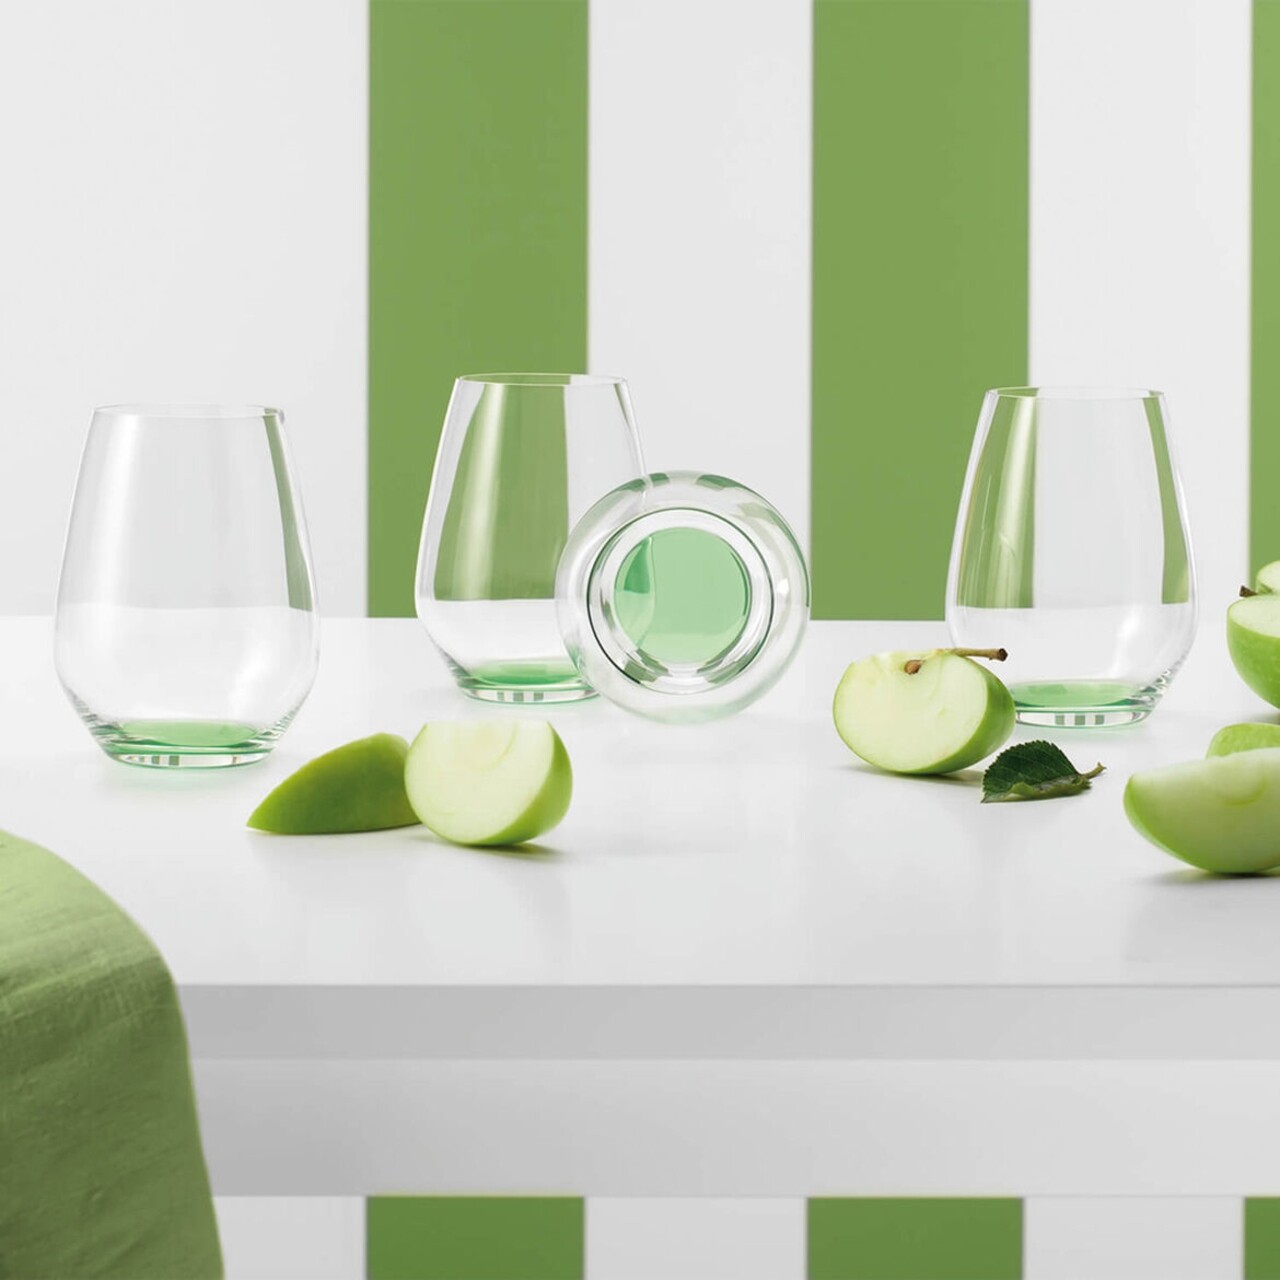 4 db-os pohár készlet, Villeroy & Boch, Colorful Life Green Apple, 420 ml, kristályüveg, zöld